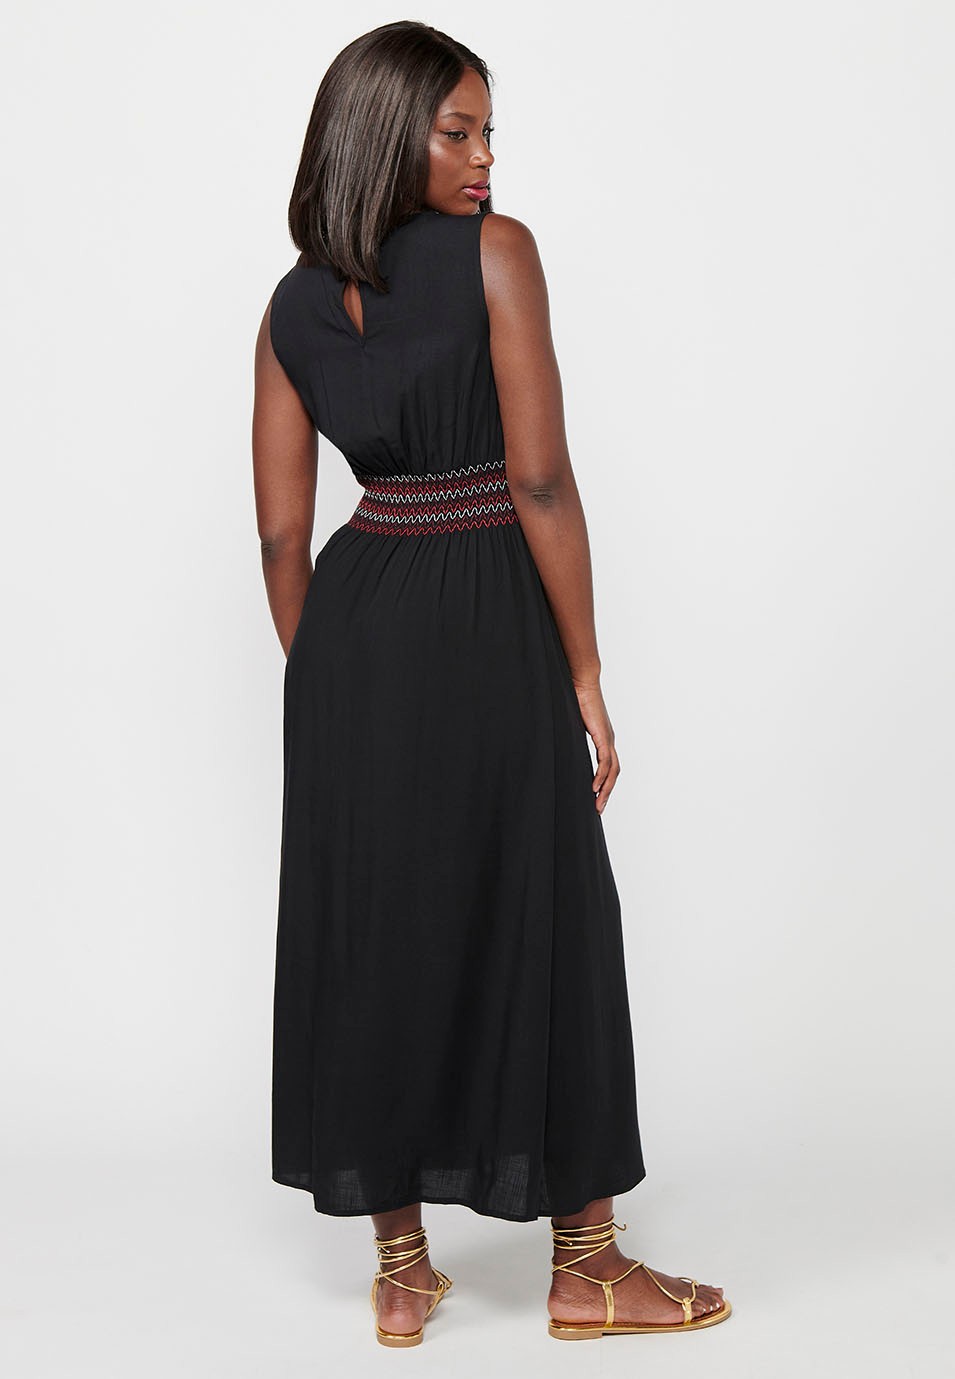 Robe longue sans manches, décolleté en V, taille caoutchoutée, coloris noir pour femme